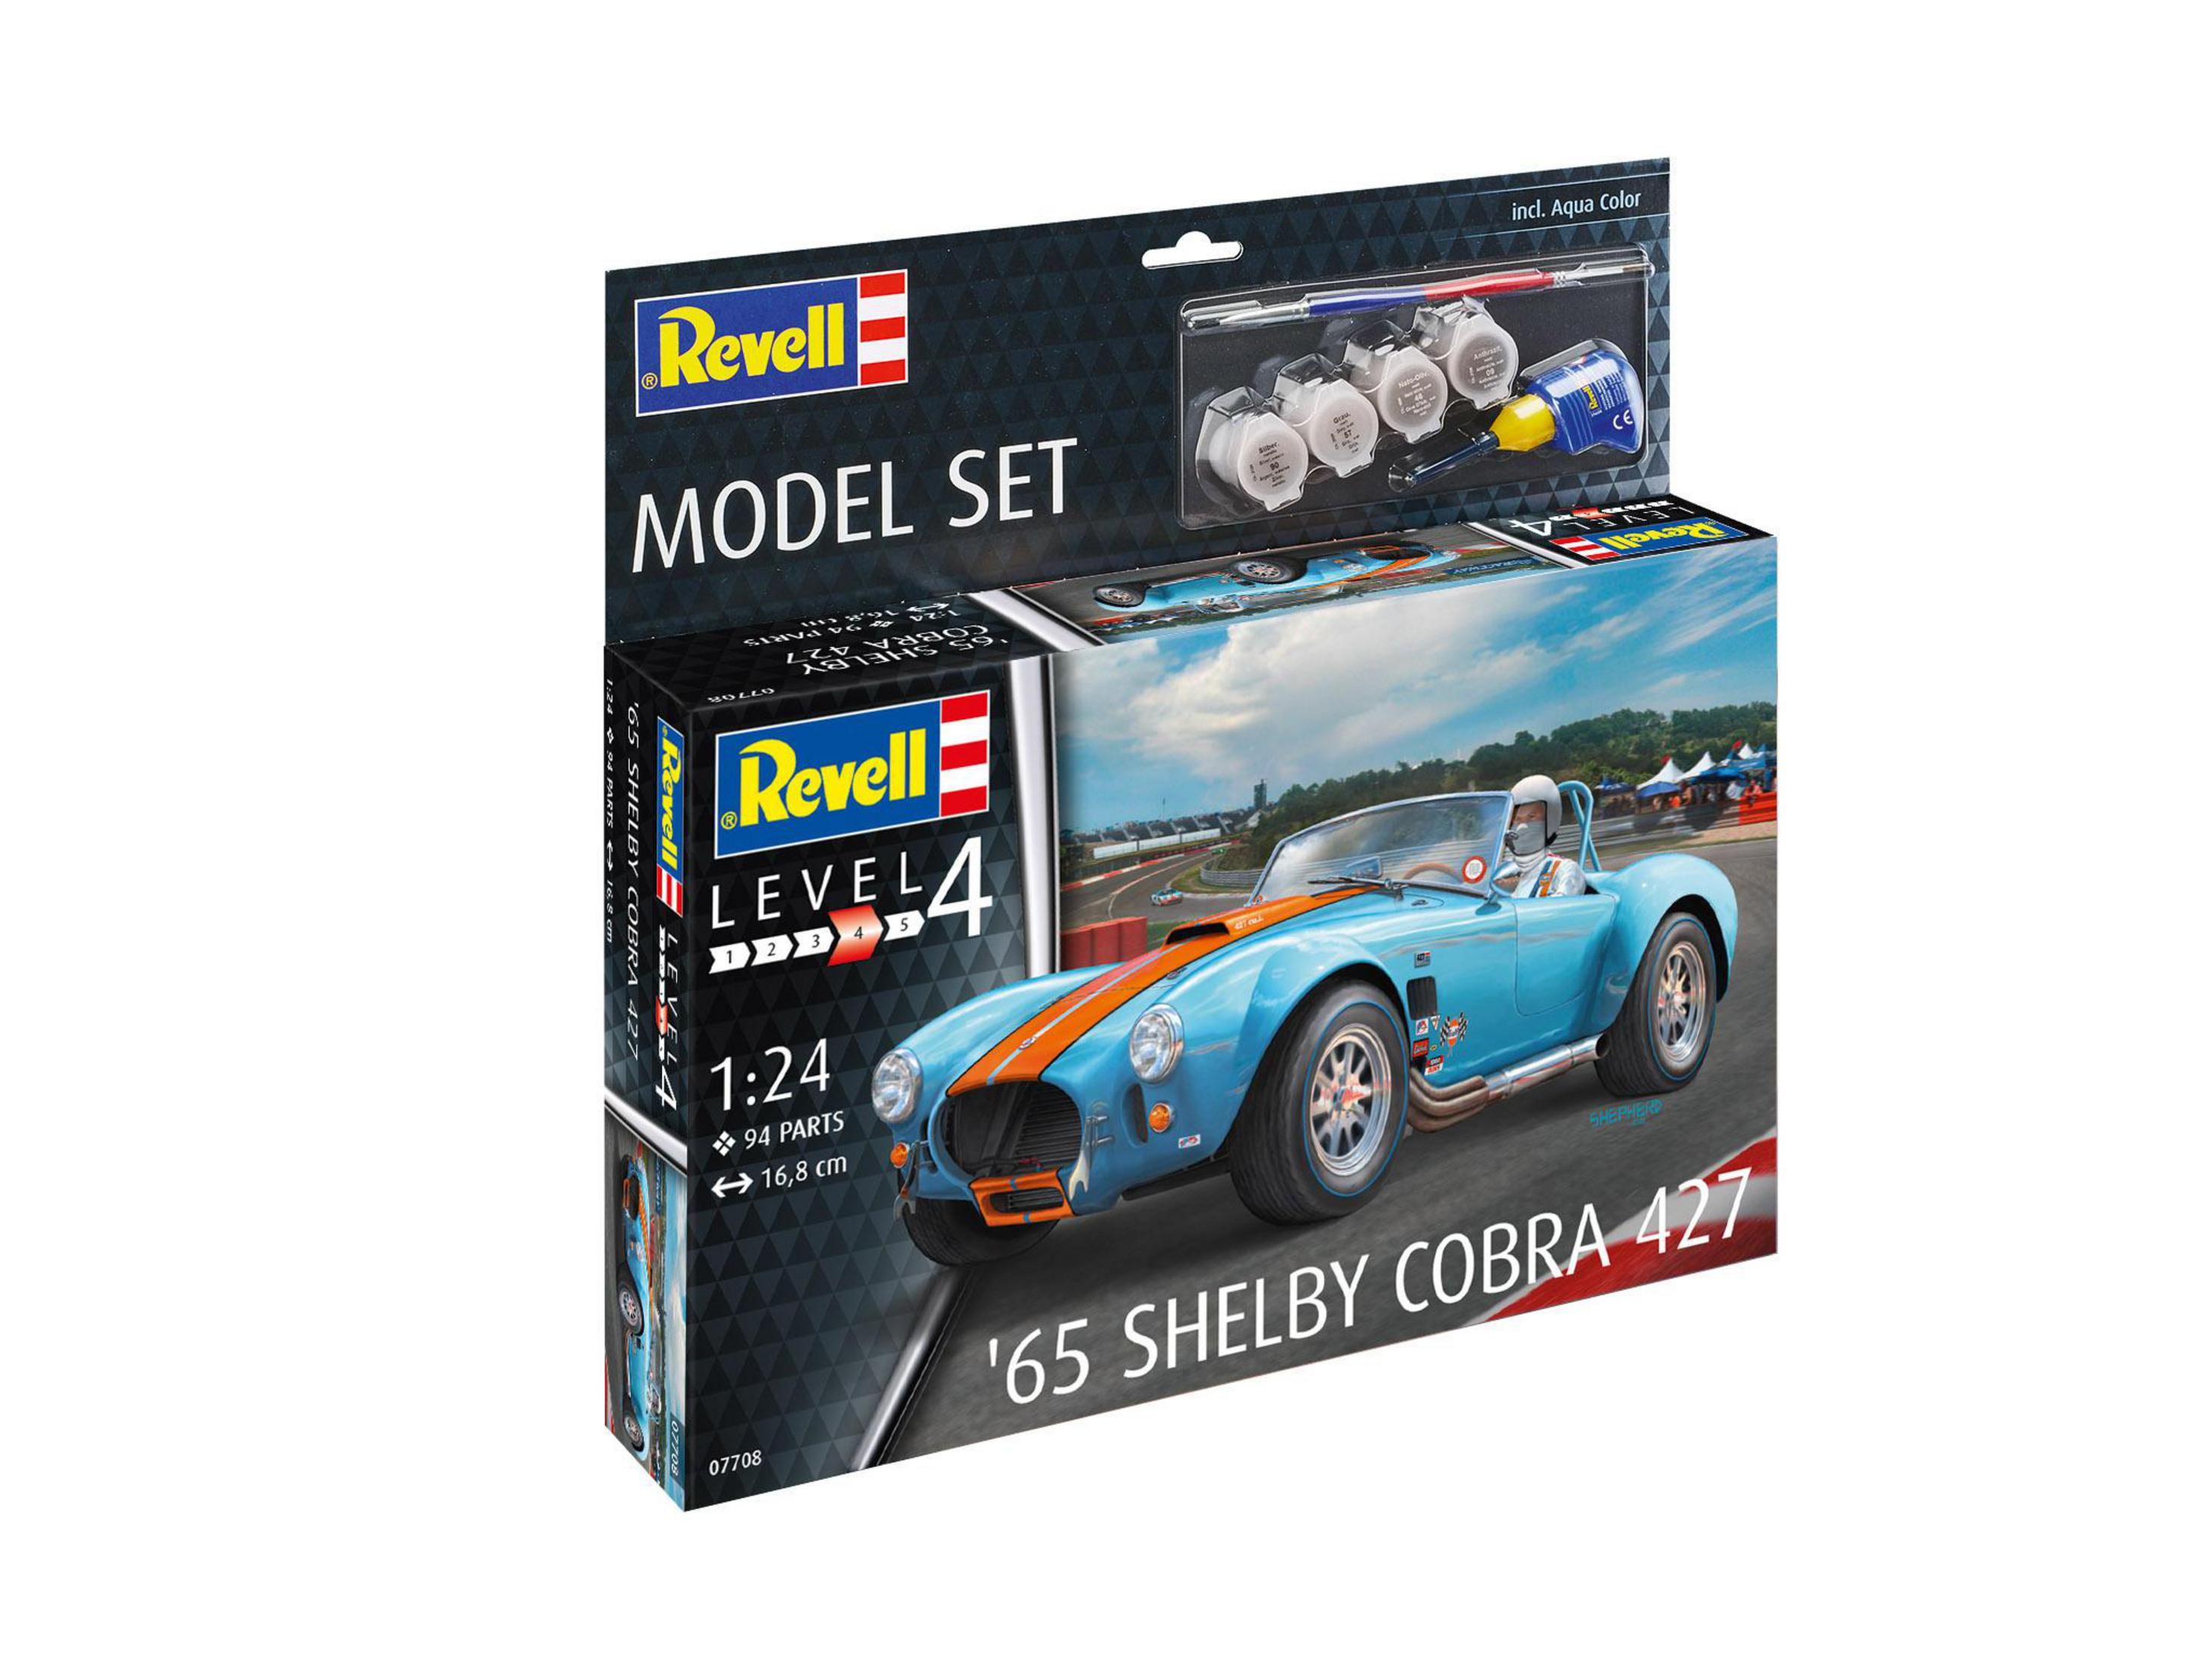 REVELL 67708 MODEL 427 Blau/Rot 65 SHELBY COBRA SET Modellbausatz